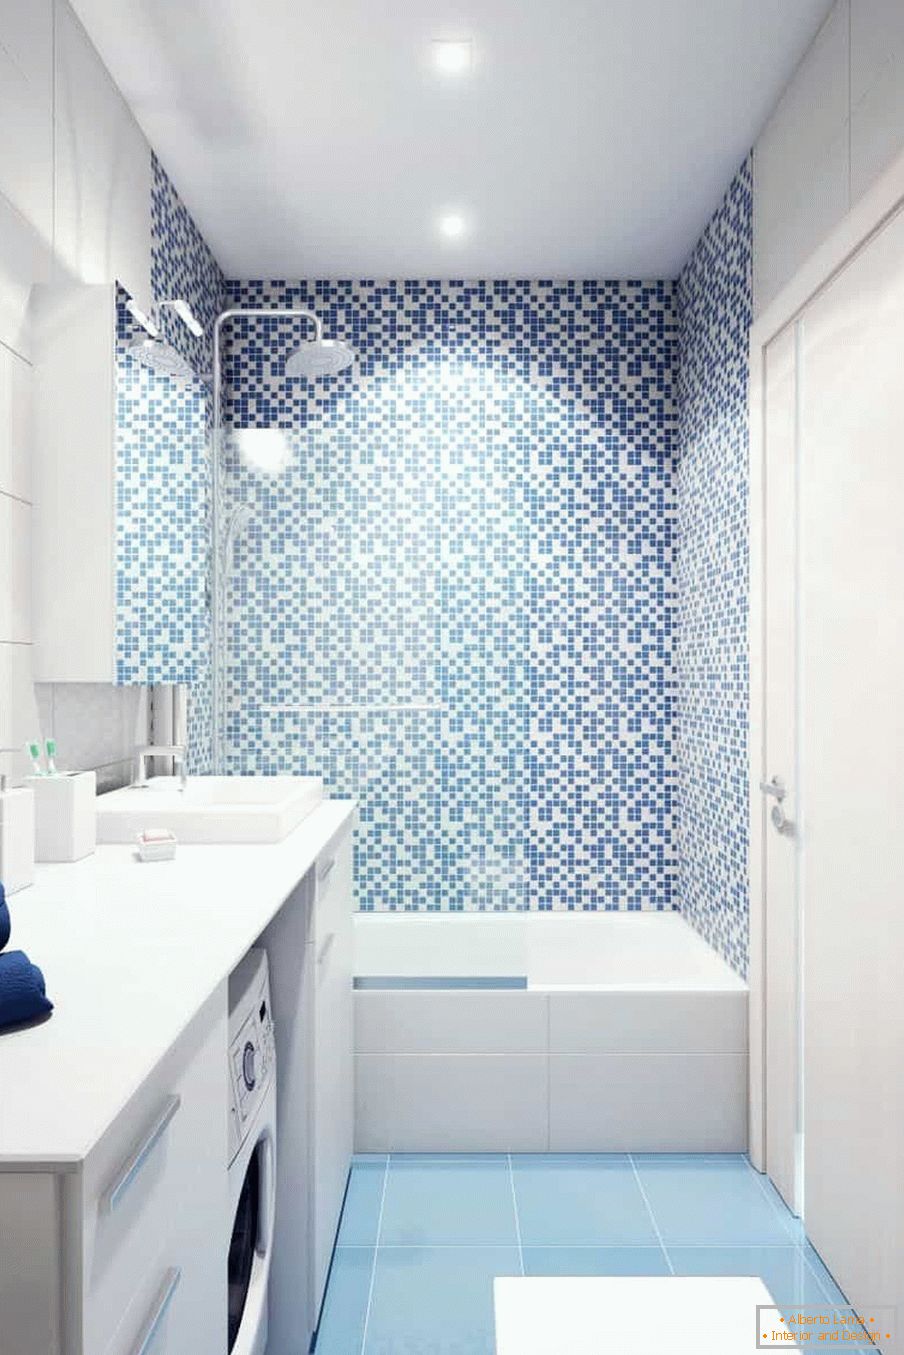 Baño blanco-azul en la casa del panel